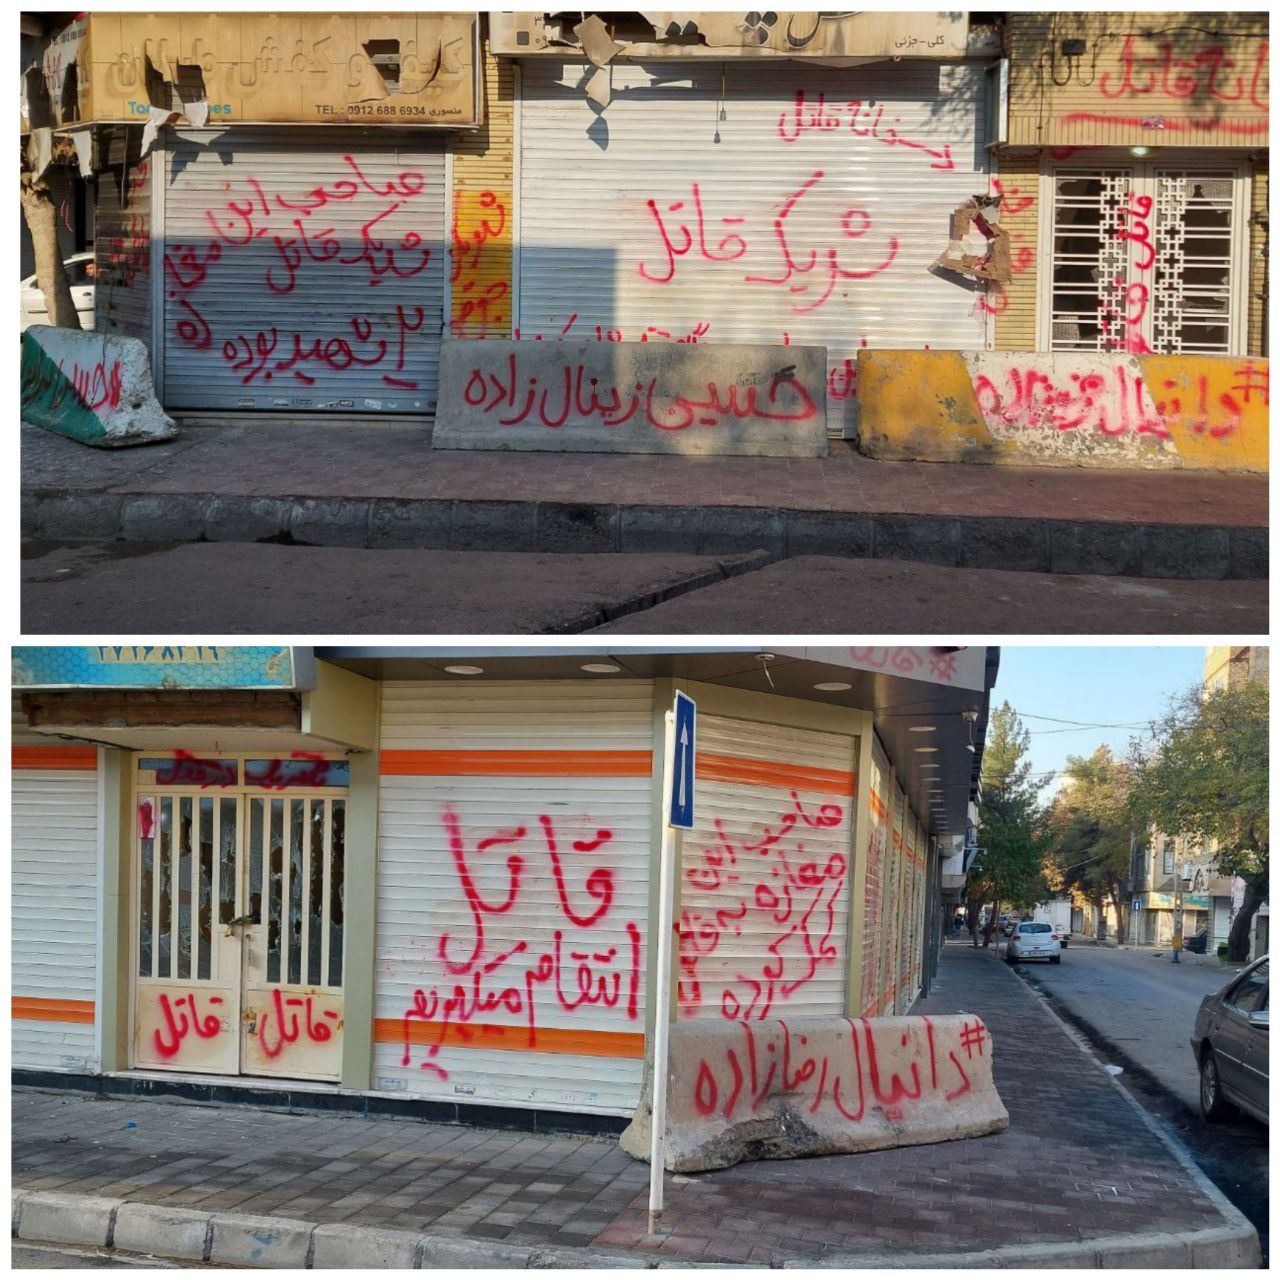 تصاویرِ رجانیوز از شعارنویسیِ اعتراضی در مشهد